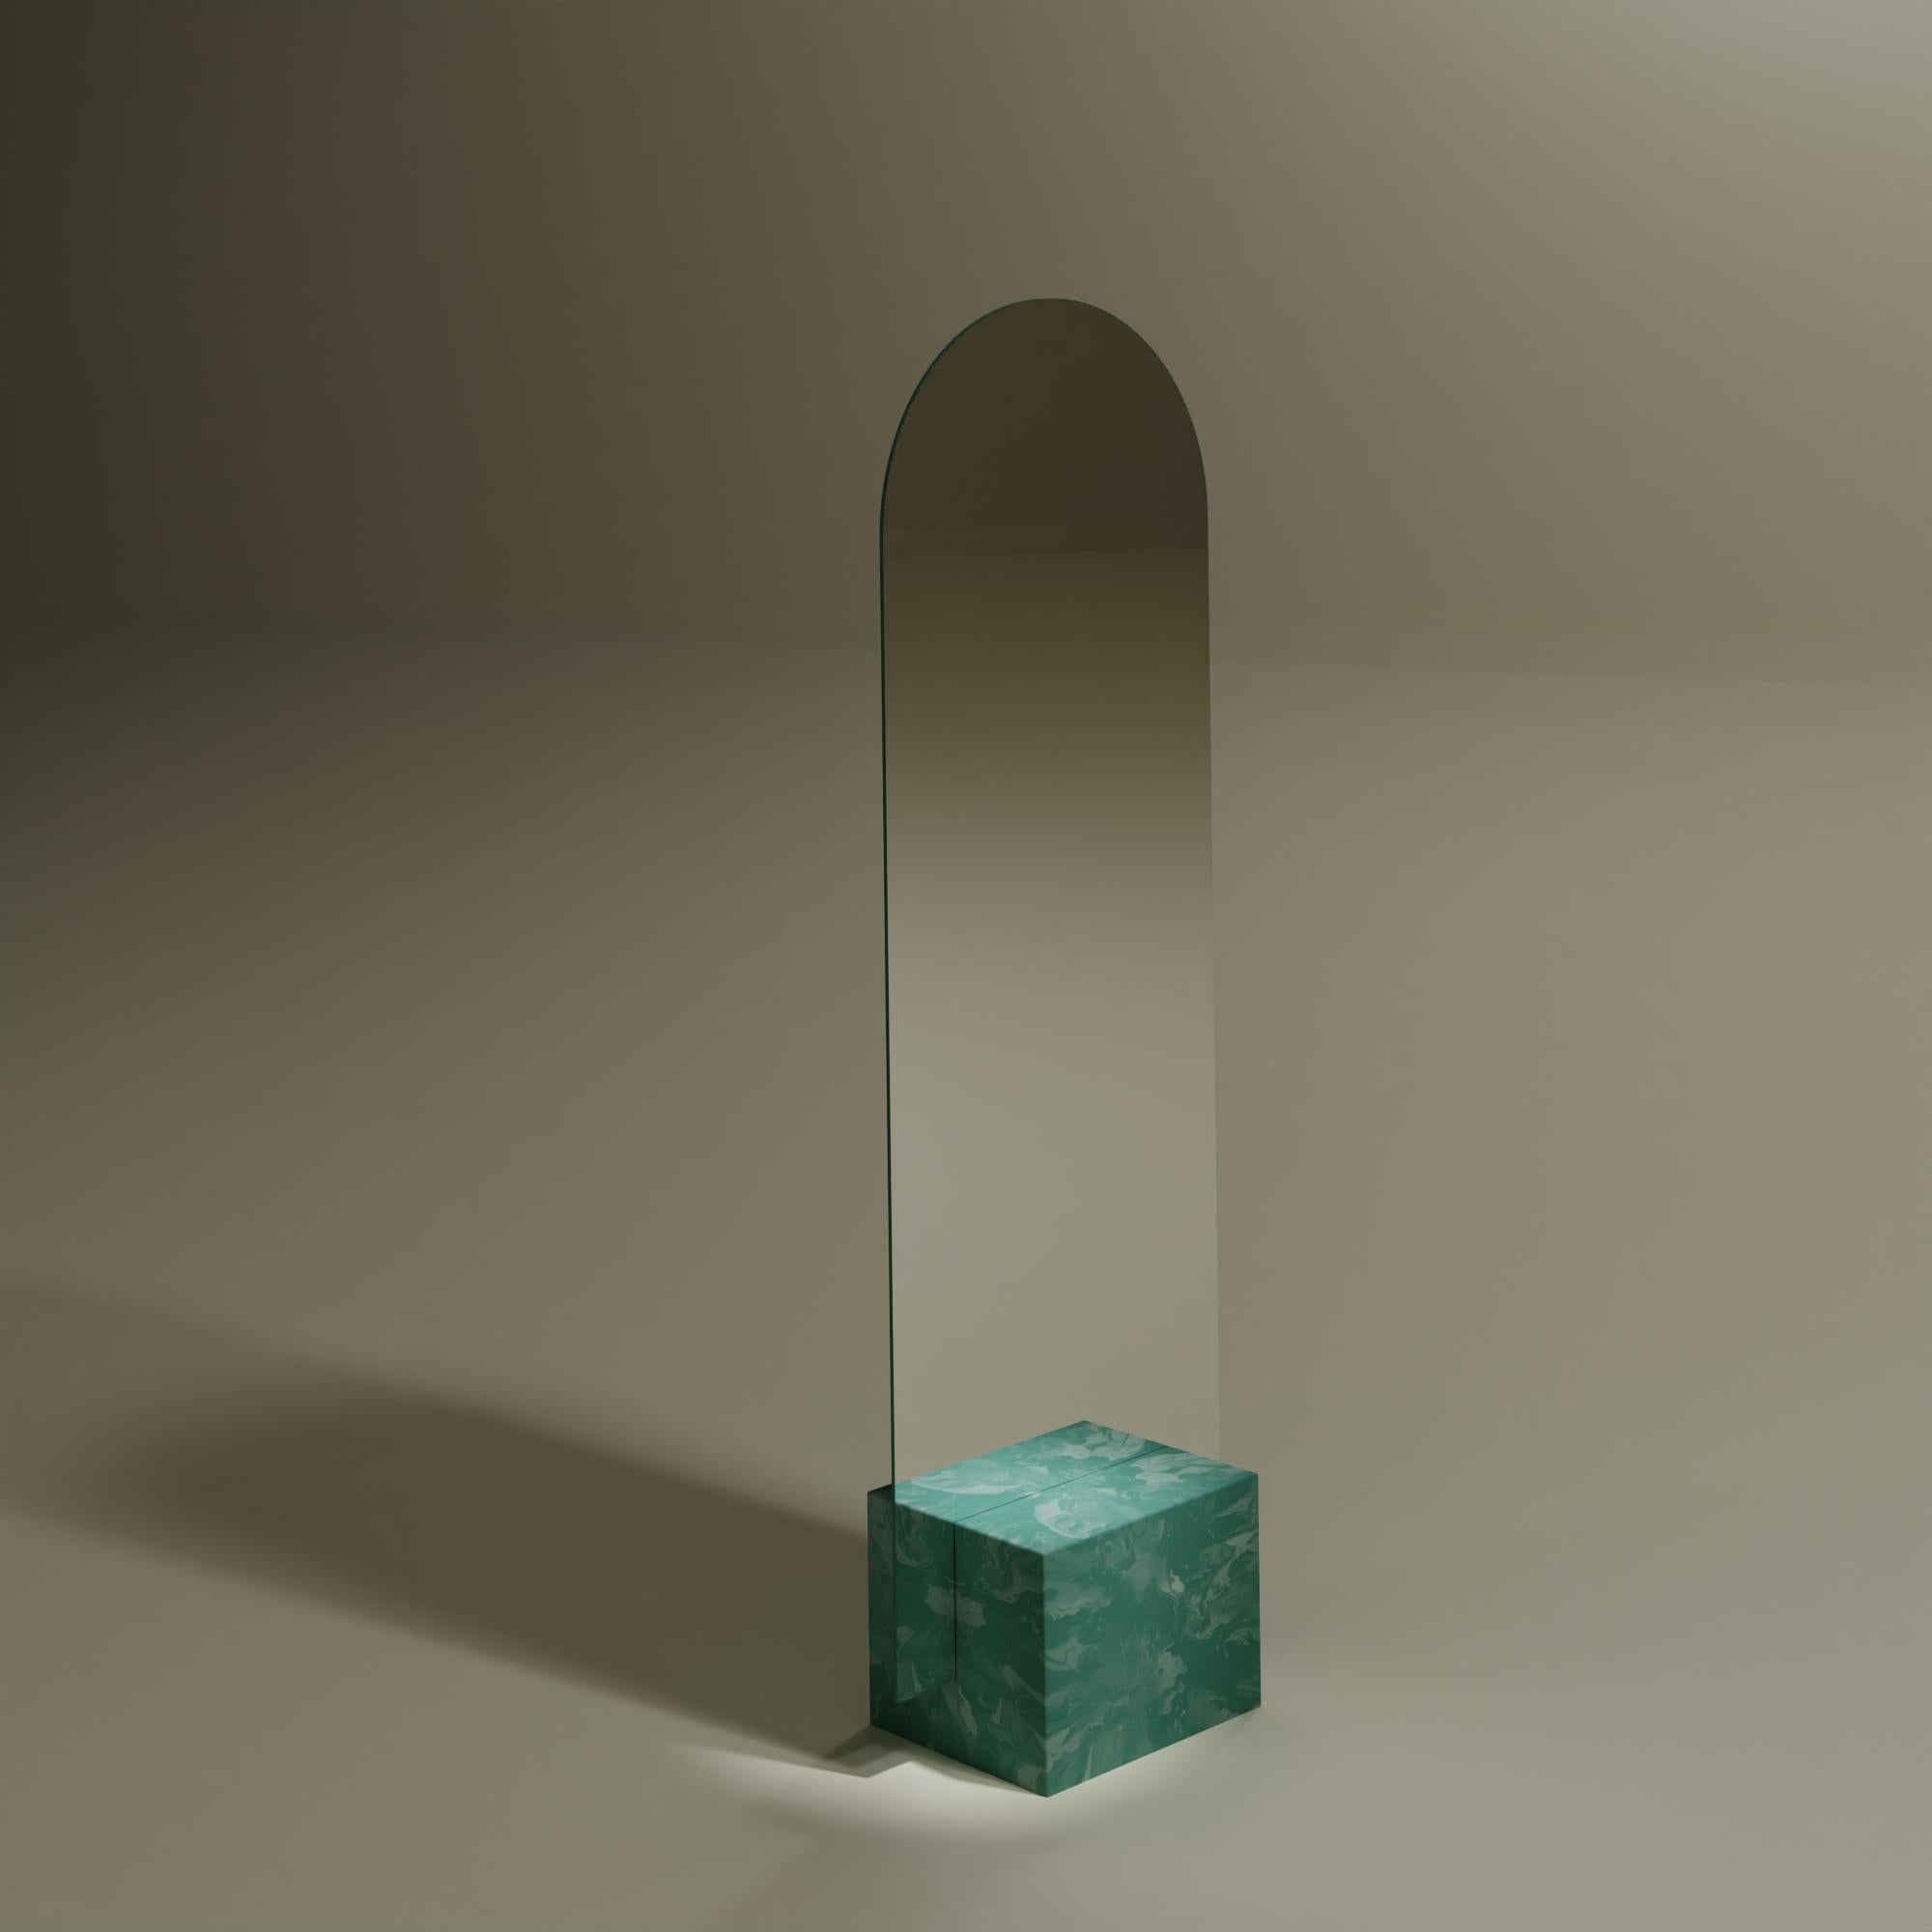 Miroir vert contemporain sur pied fabriqué à la main à partir de plastique 100% recyclé par Anqa Studios
Avec son fond en forme de pierre et la silhouette fragile de sa partie supérieure, le miroir ANQA Moonrise est une confluence moderne d'art et